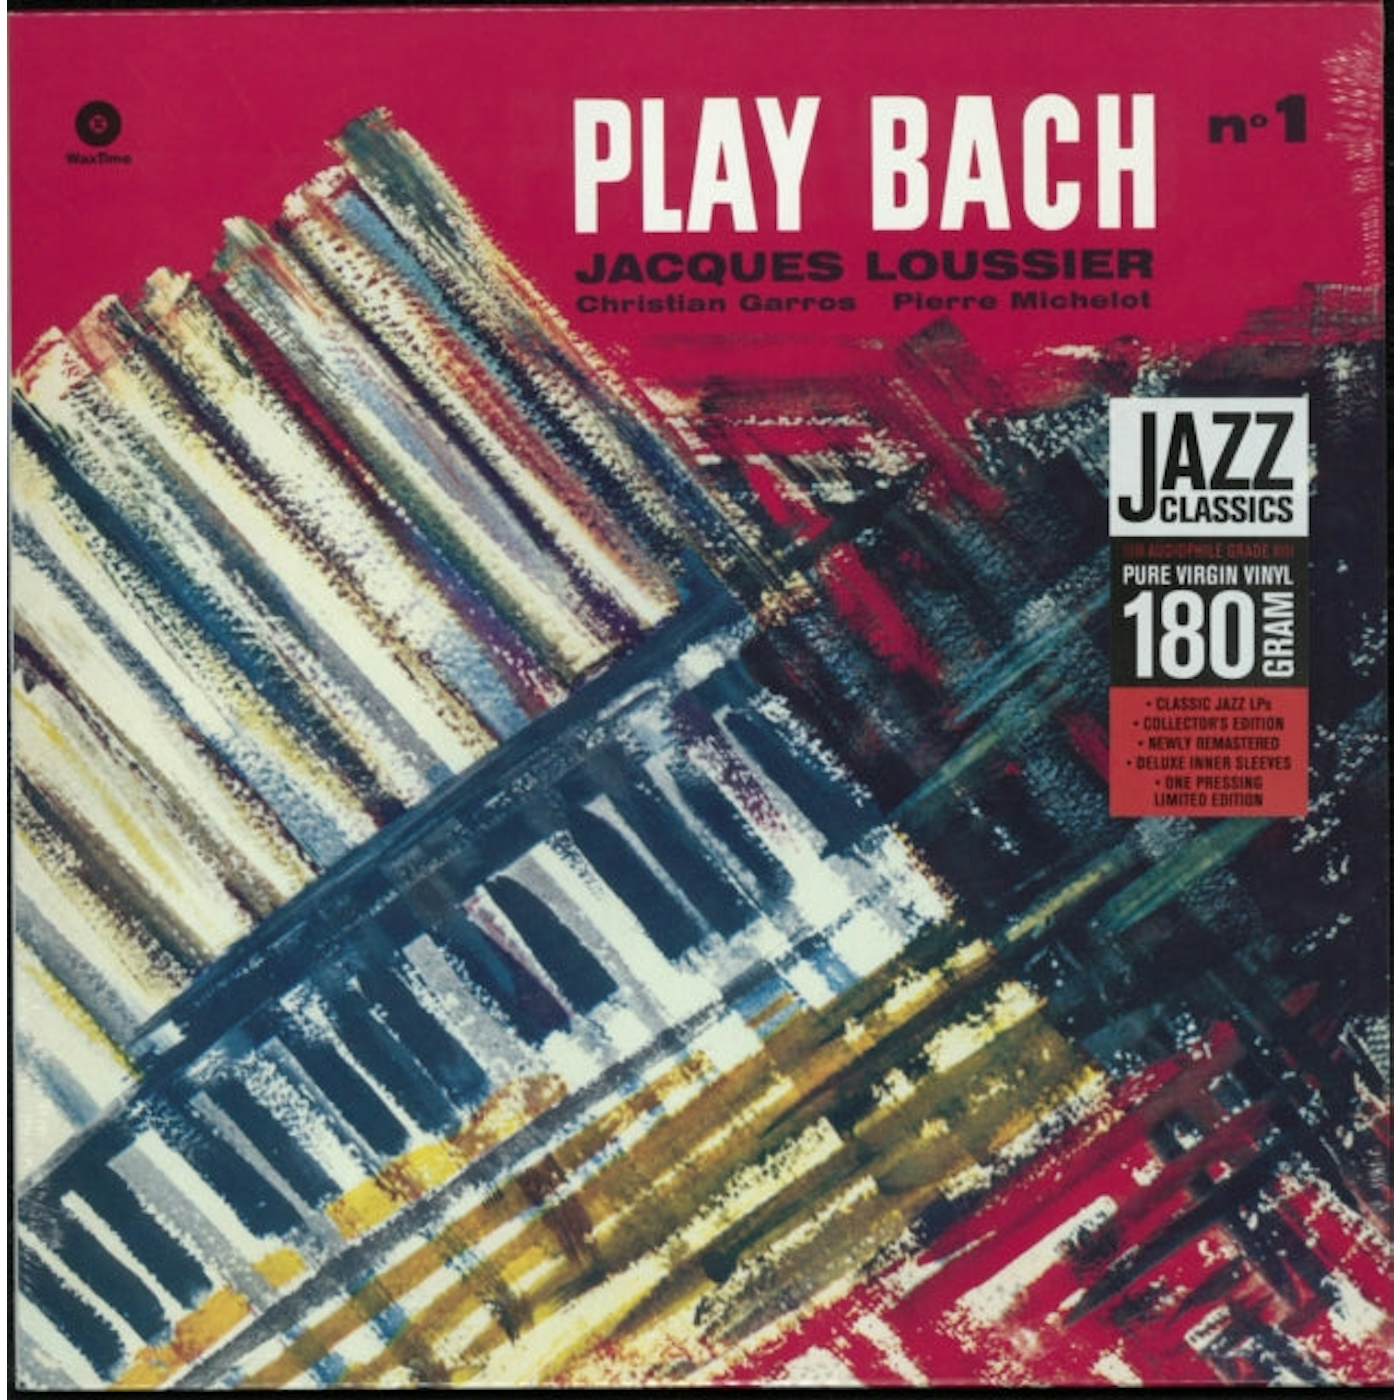 Jacques Loussier LP - Play Bach Vol.1 (Vinyl)